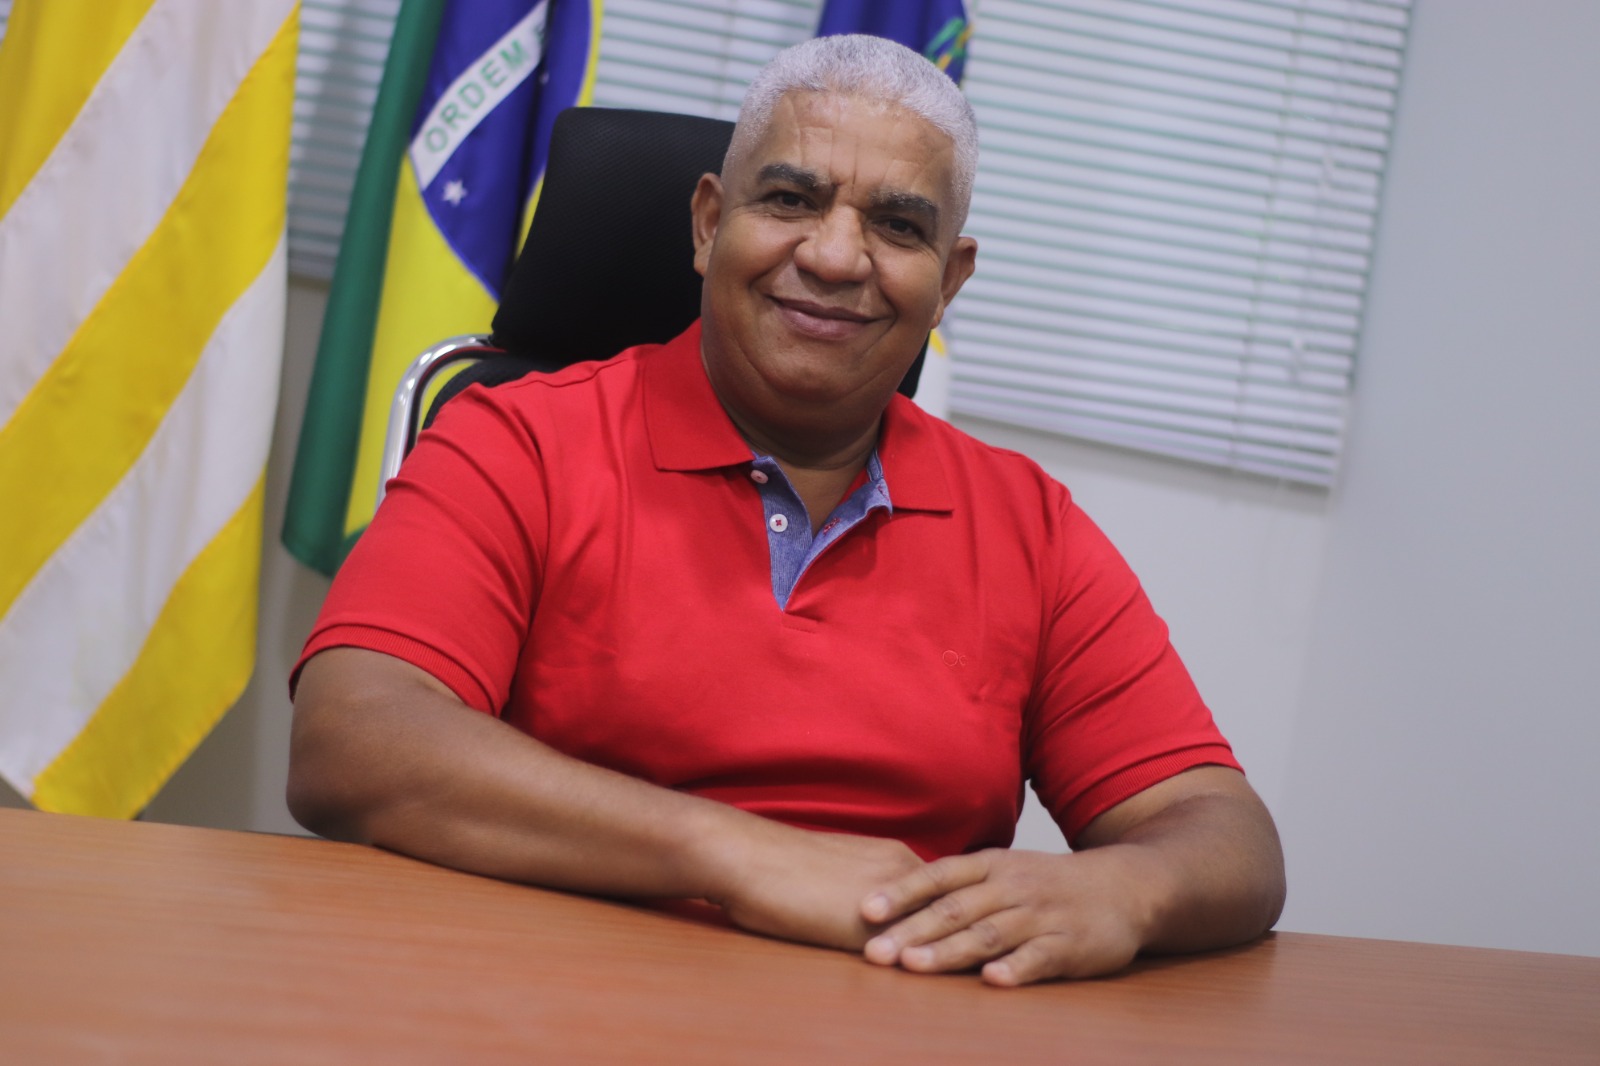 Exclusivo: Prestes a assumir a presidência da Câmara, vereador Edson Quinto fala sobre projetos e desafios para Volta Redonda 